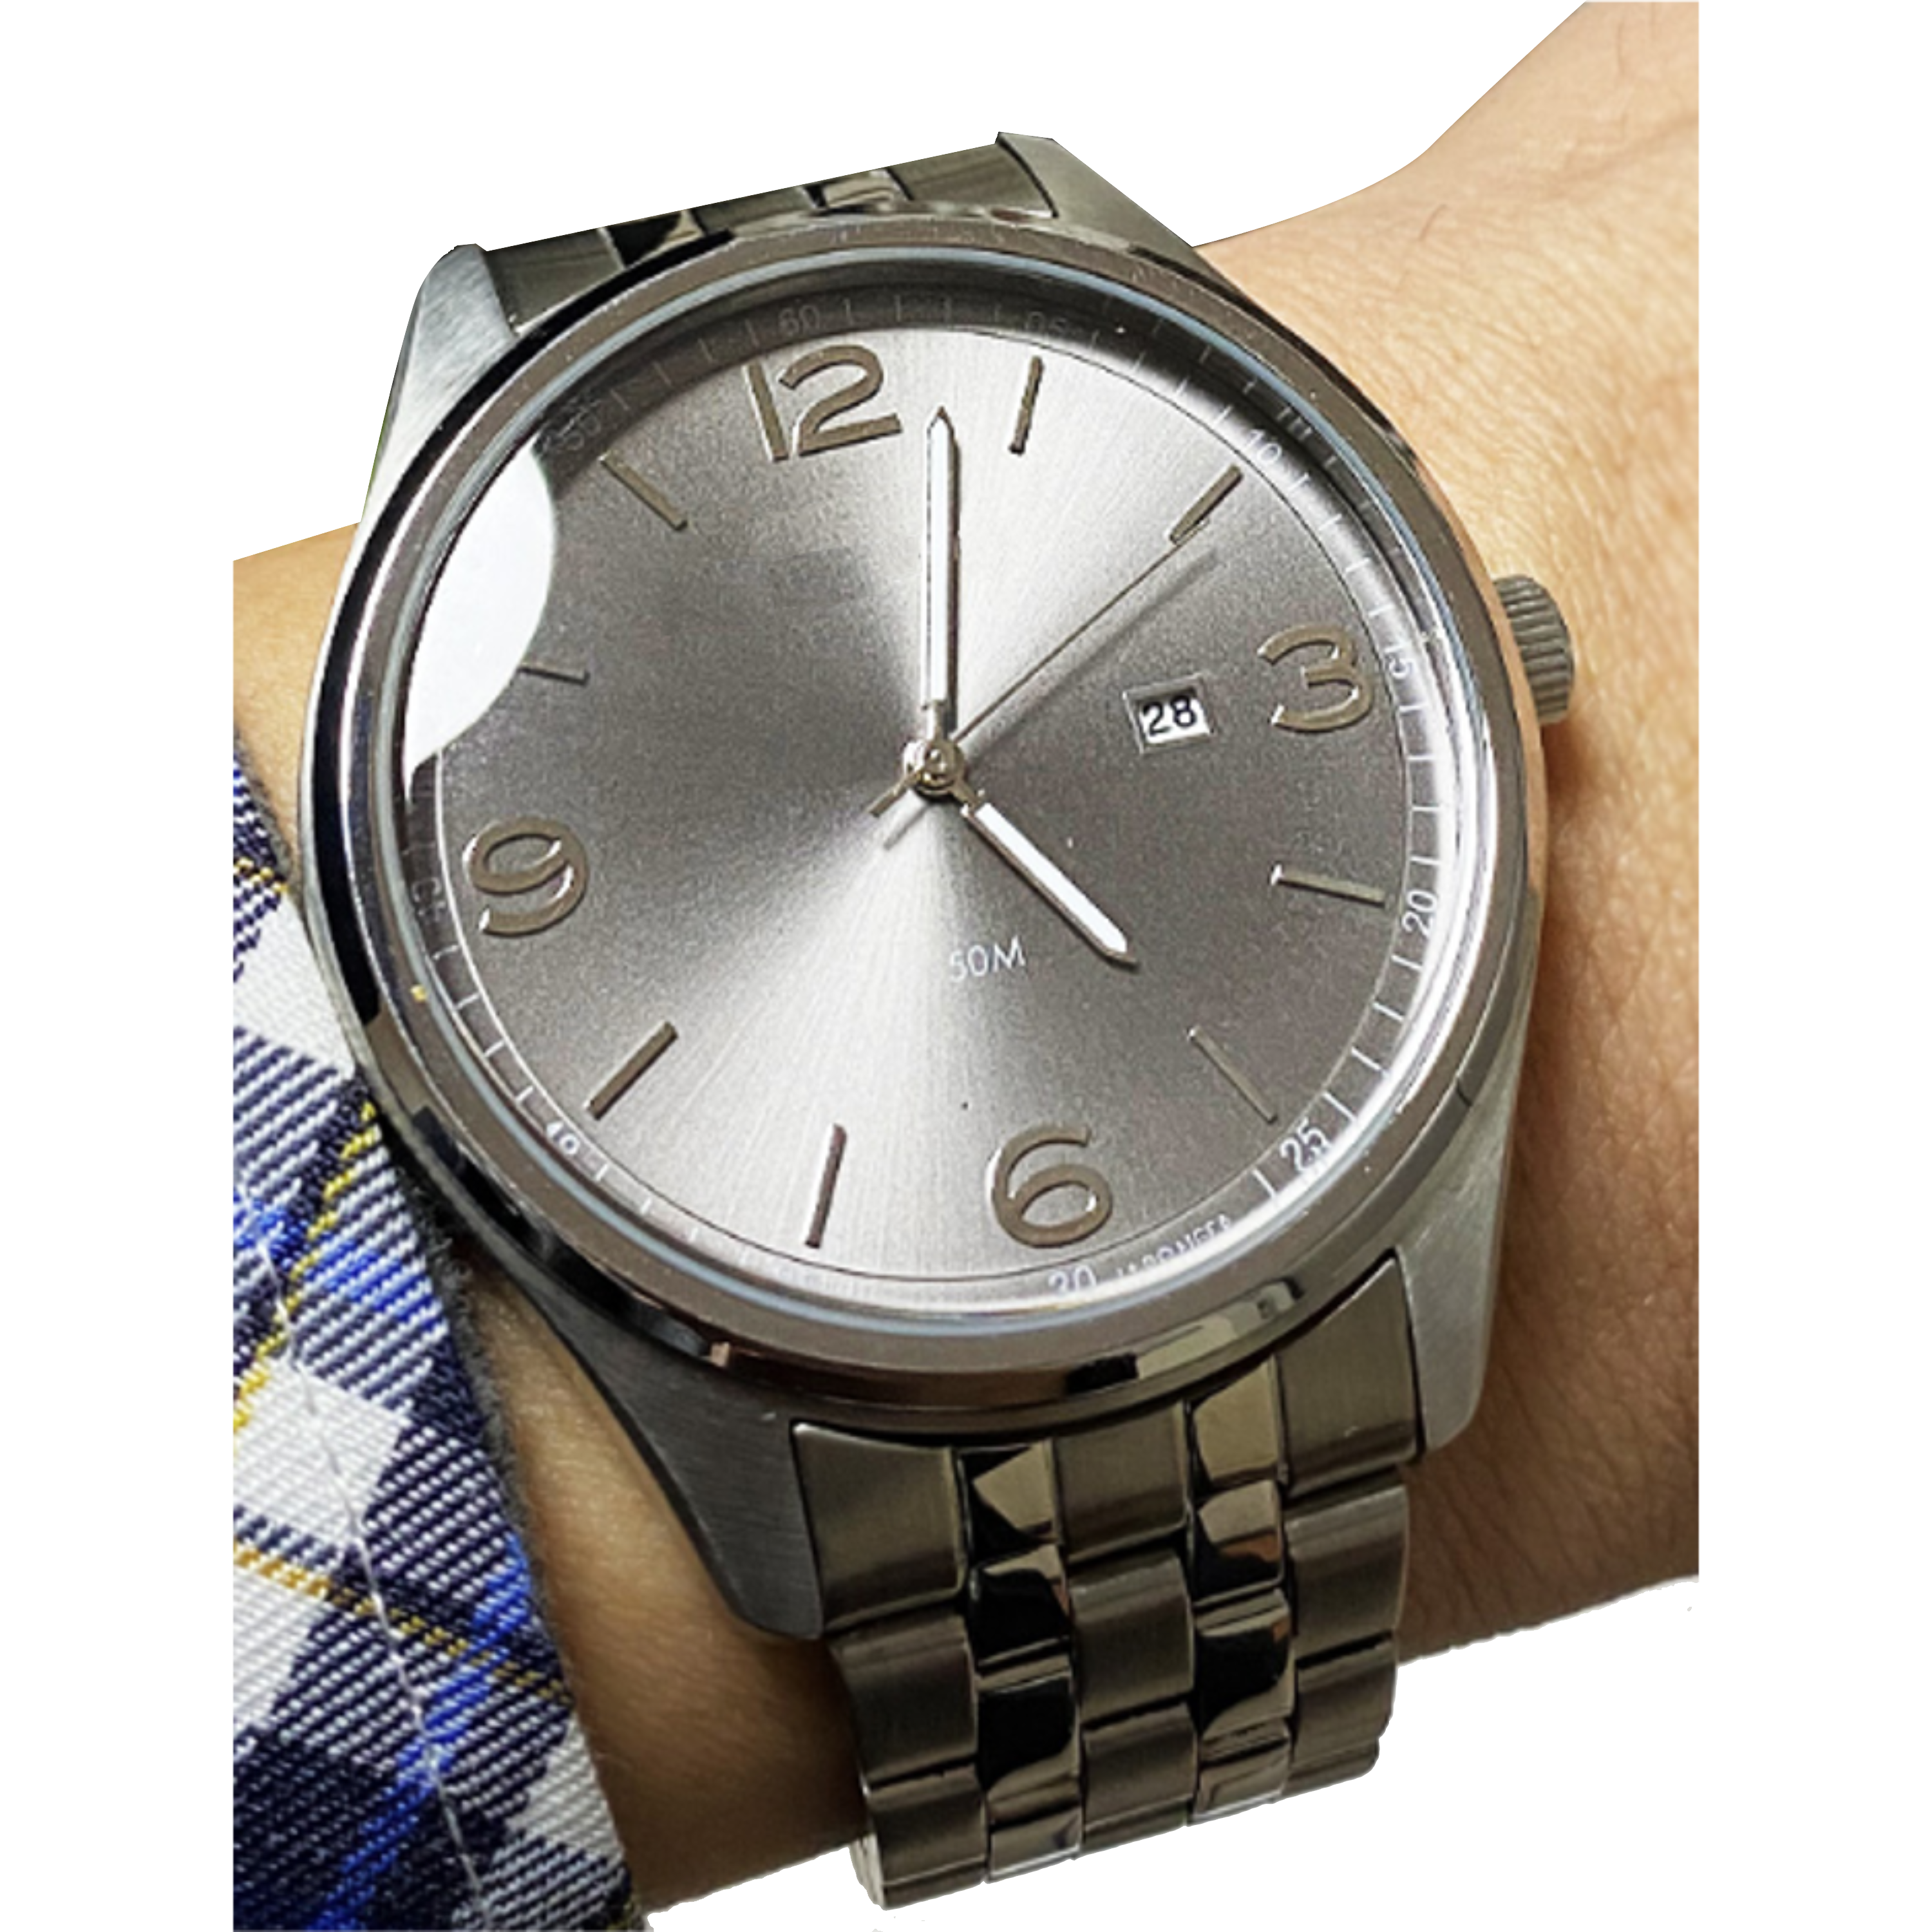 שעון יד לגבר COMTEX S7G 44mm - צבע כסף אחריות לשנה ע"י היבואן הרשמי